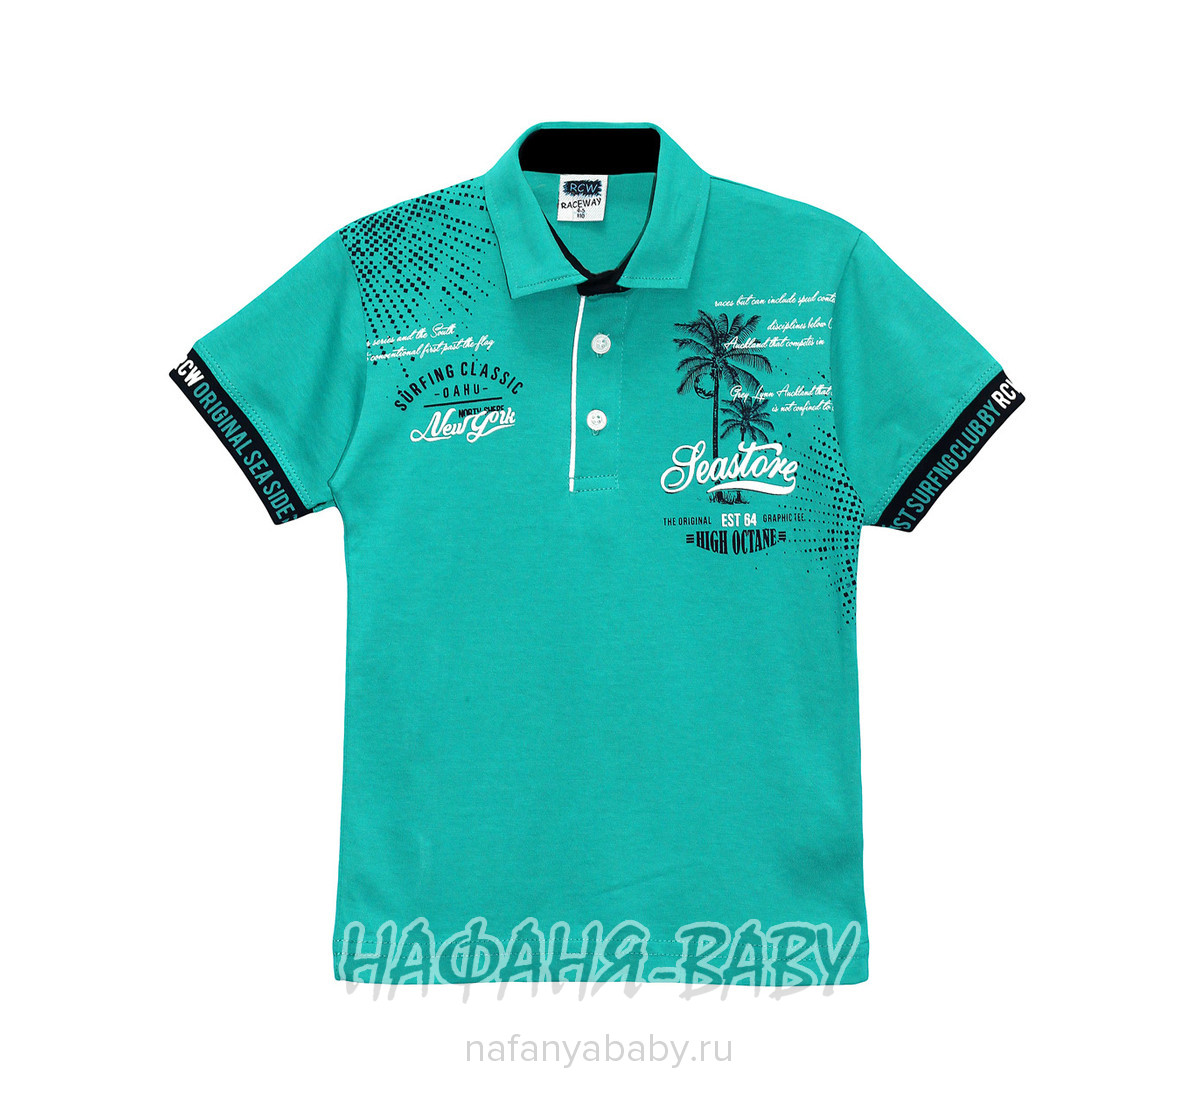 Подростковая рубашка-поло RCW, купить в интернет магазине Нафаня. арт: 6562.